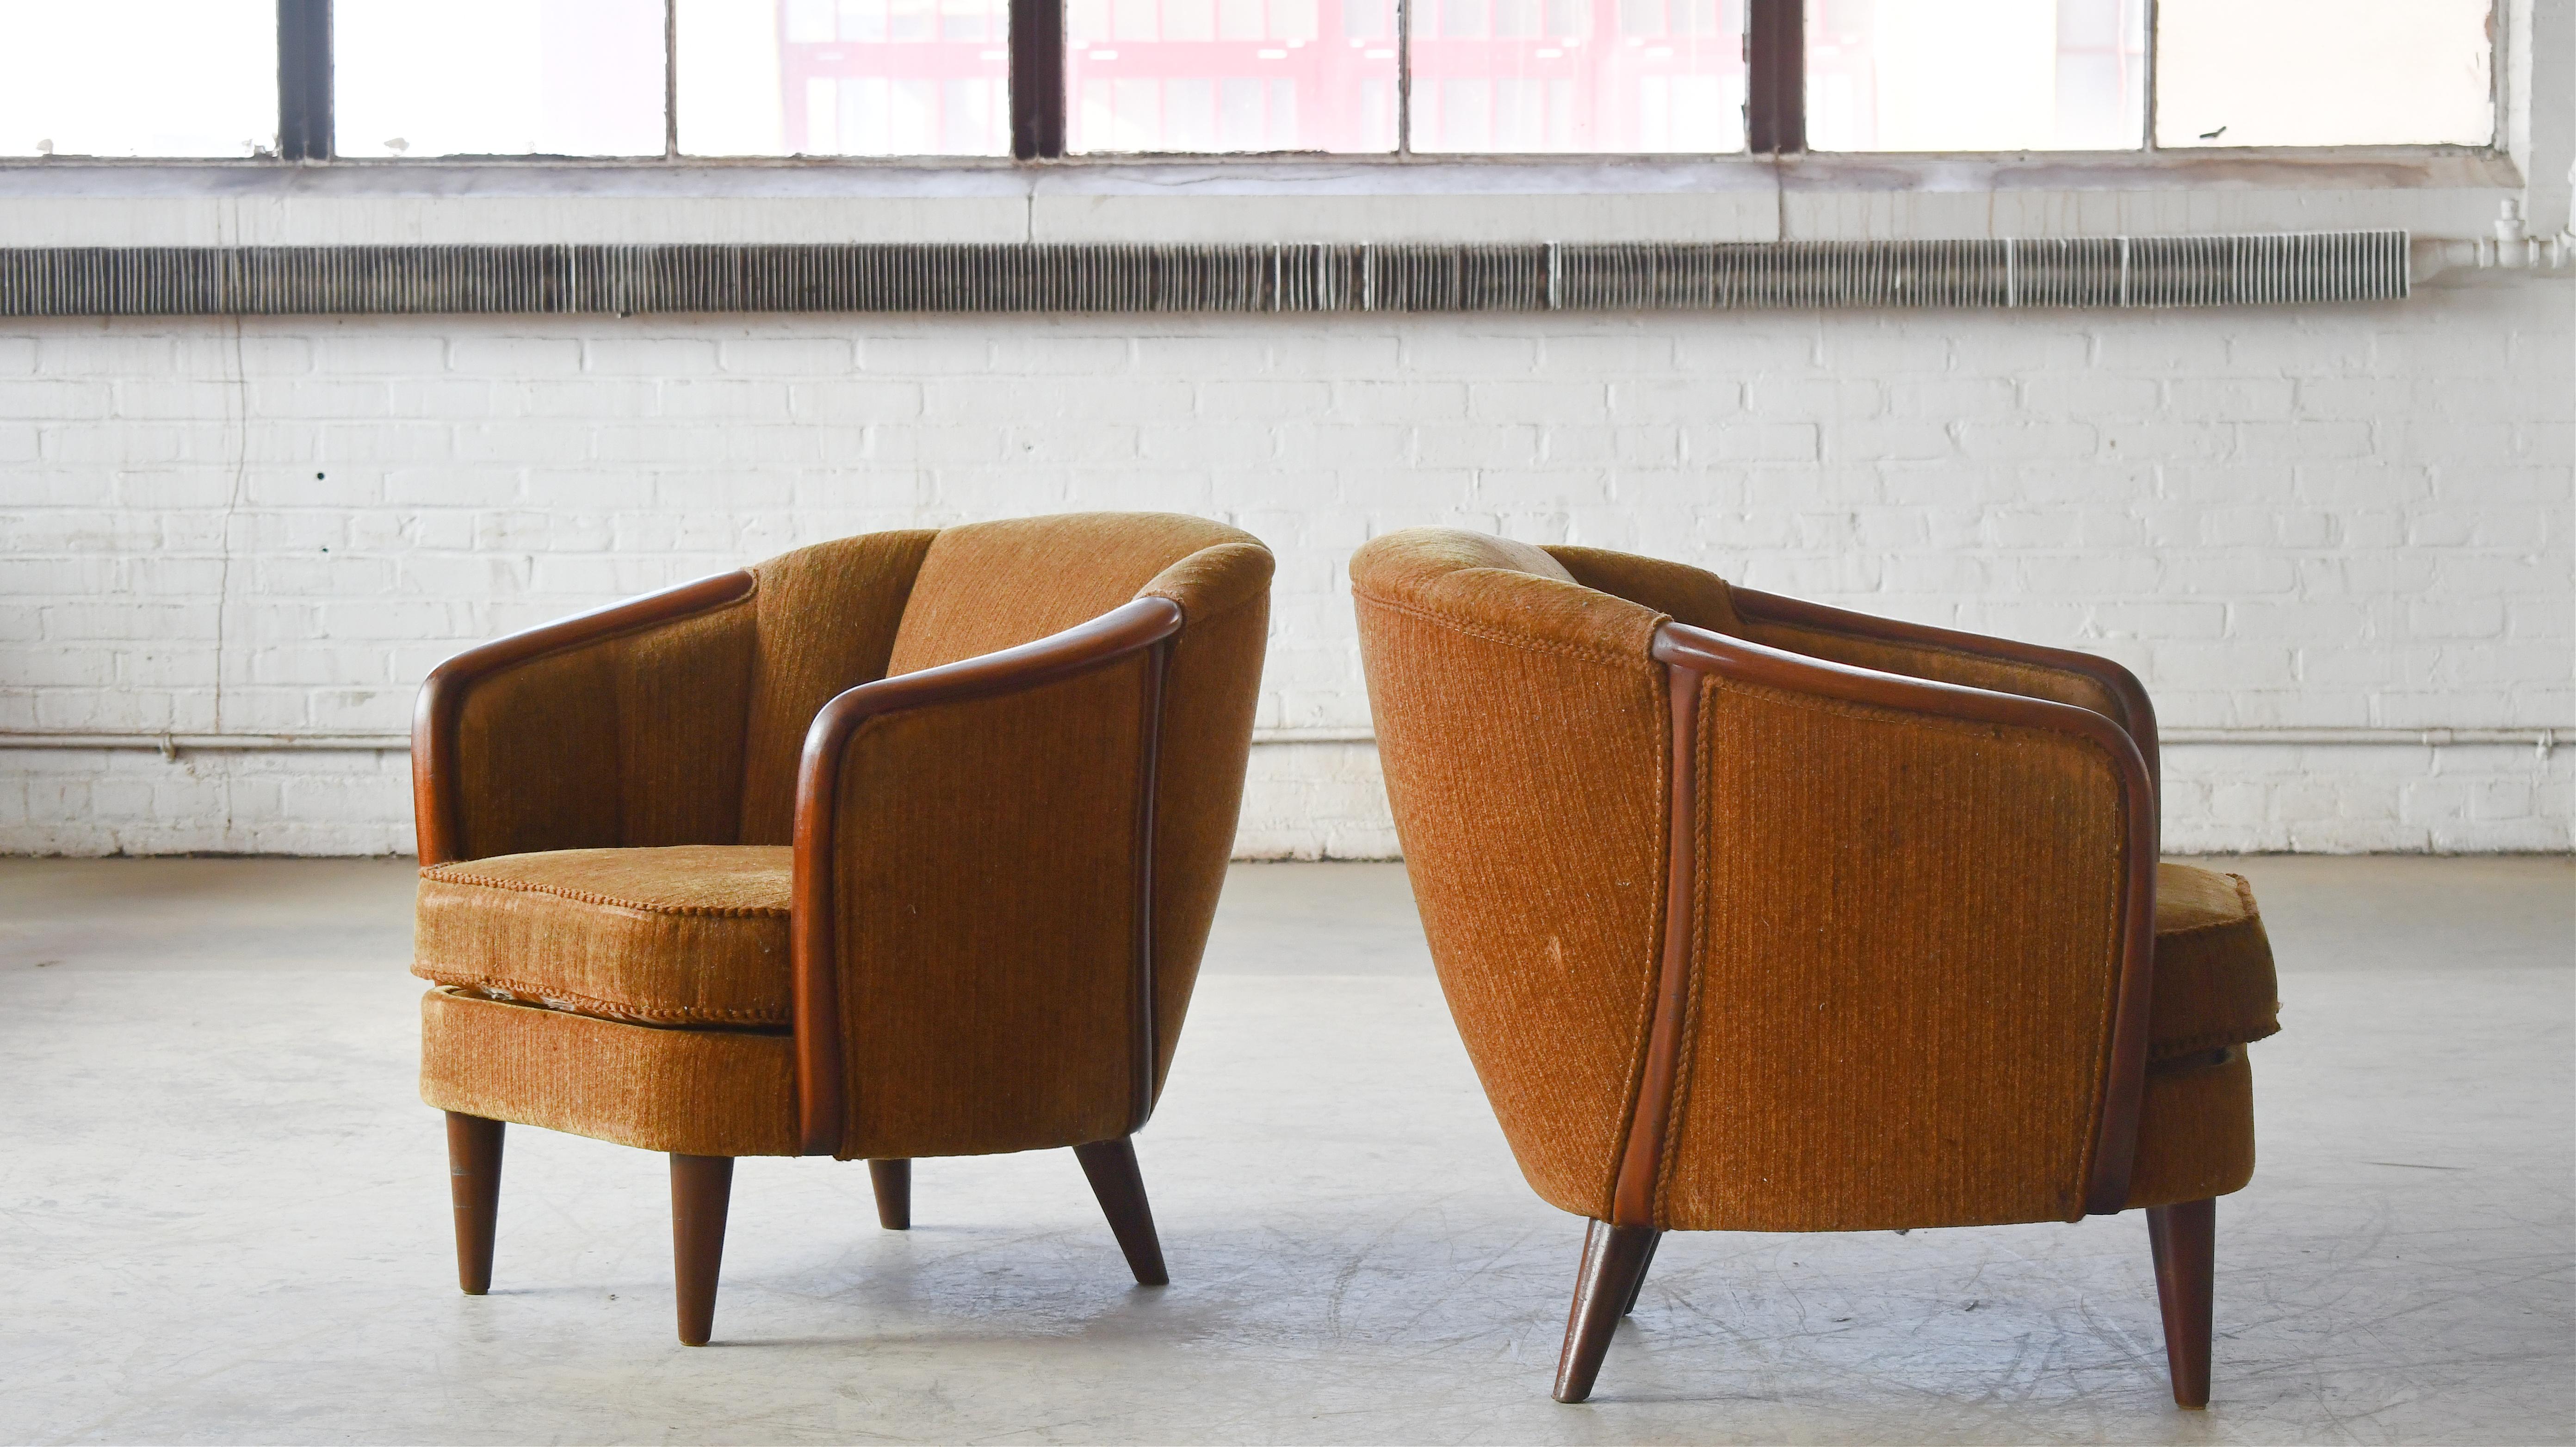 Rares et magnifiques chaises longues de style tonneau ou baignoire fabriquées au Danemark dans les années 1950.  Un design unique et une présence forte pour ancrer une pièce. Les pieds, les accoudoirs et le cadre intégré sont en teck avec une